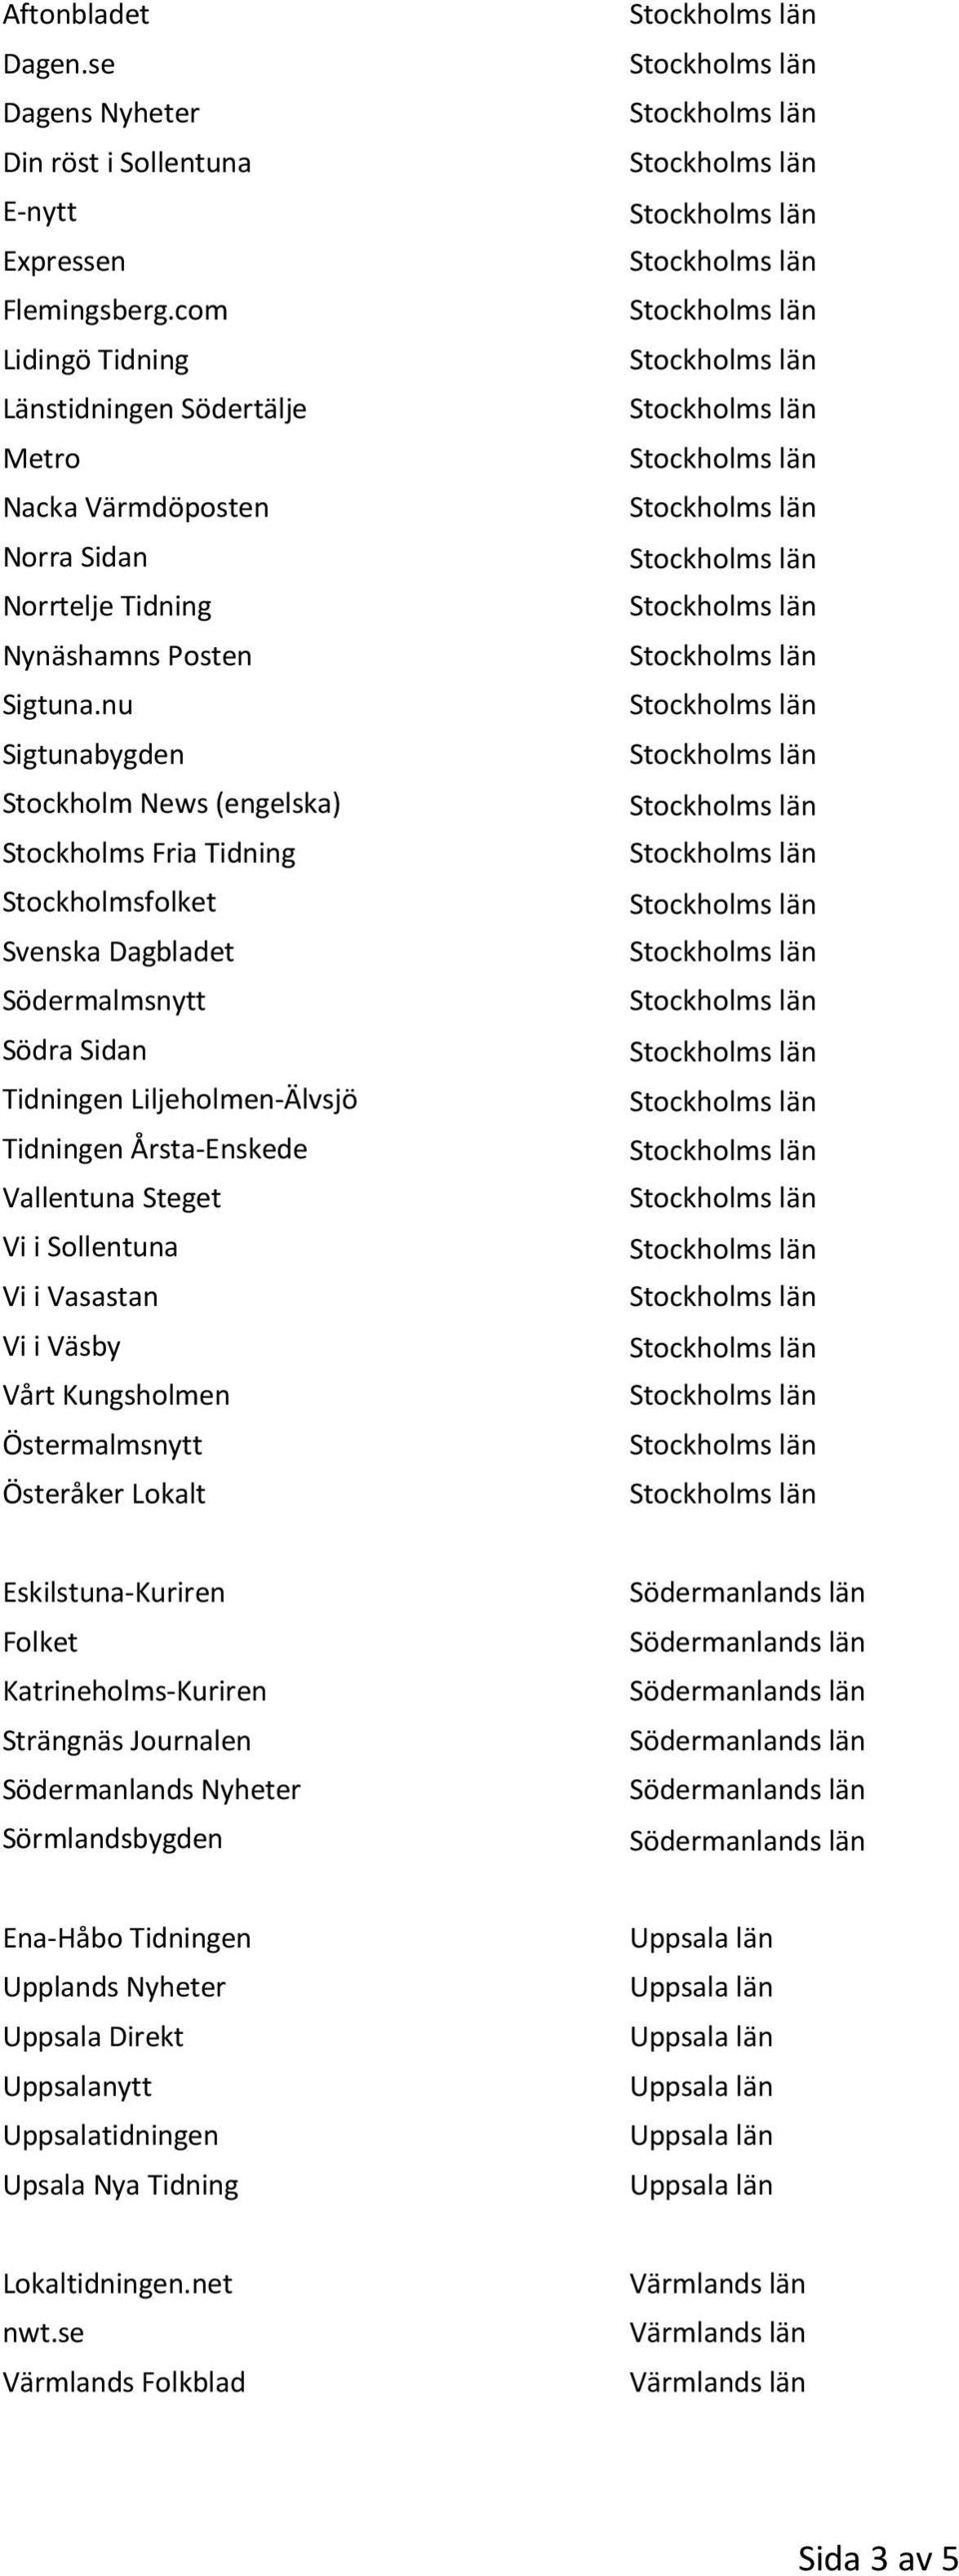 nu Sigtunabygden Stockholm News (engelska) Stockholms Fria Tidning Stockholmsfolket Svenska Dagbladet Södermalmsnytt Södra Sidan Tidningen Liljeholmen-Älvsjö Tidningen Årsta-Enskede